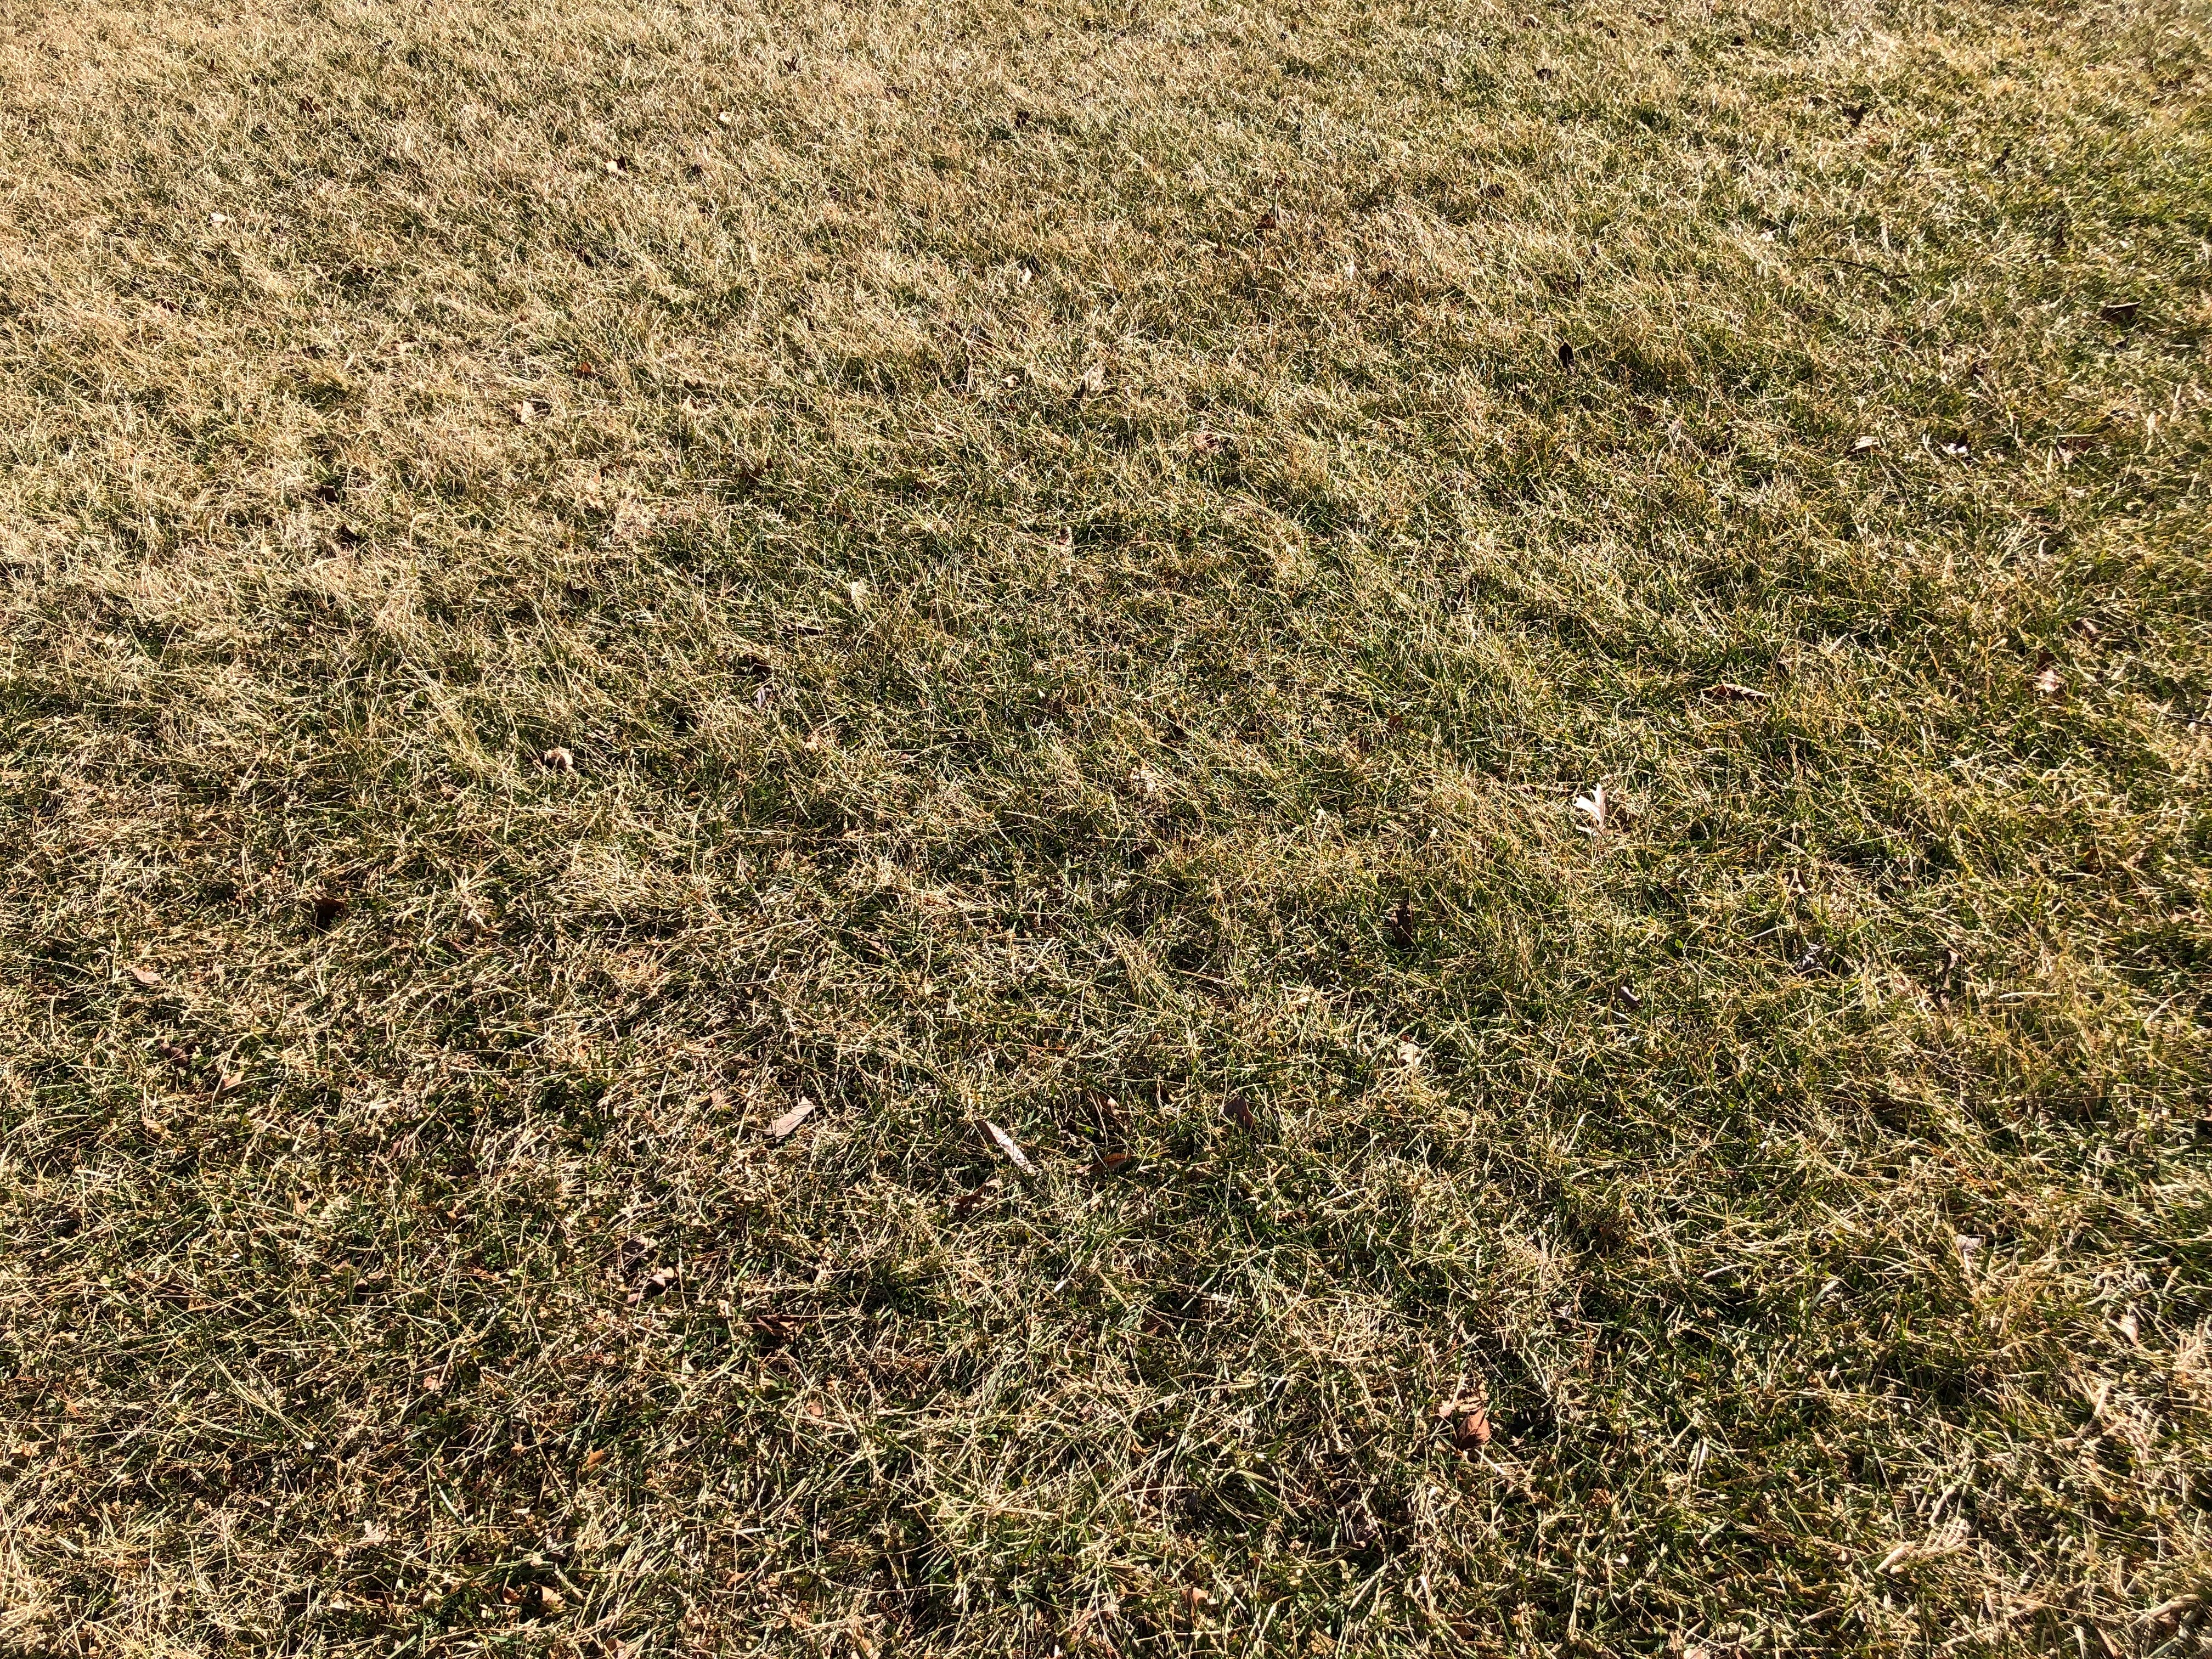 brown dormant grass in winter CC